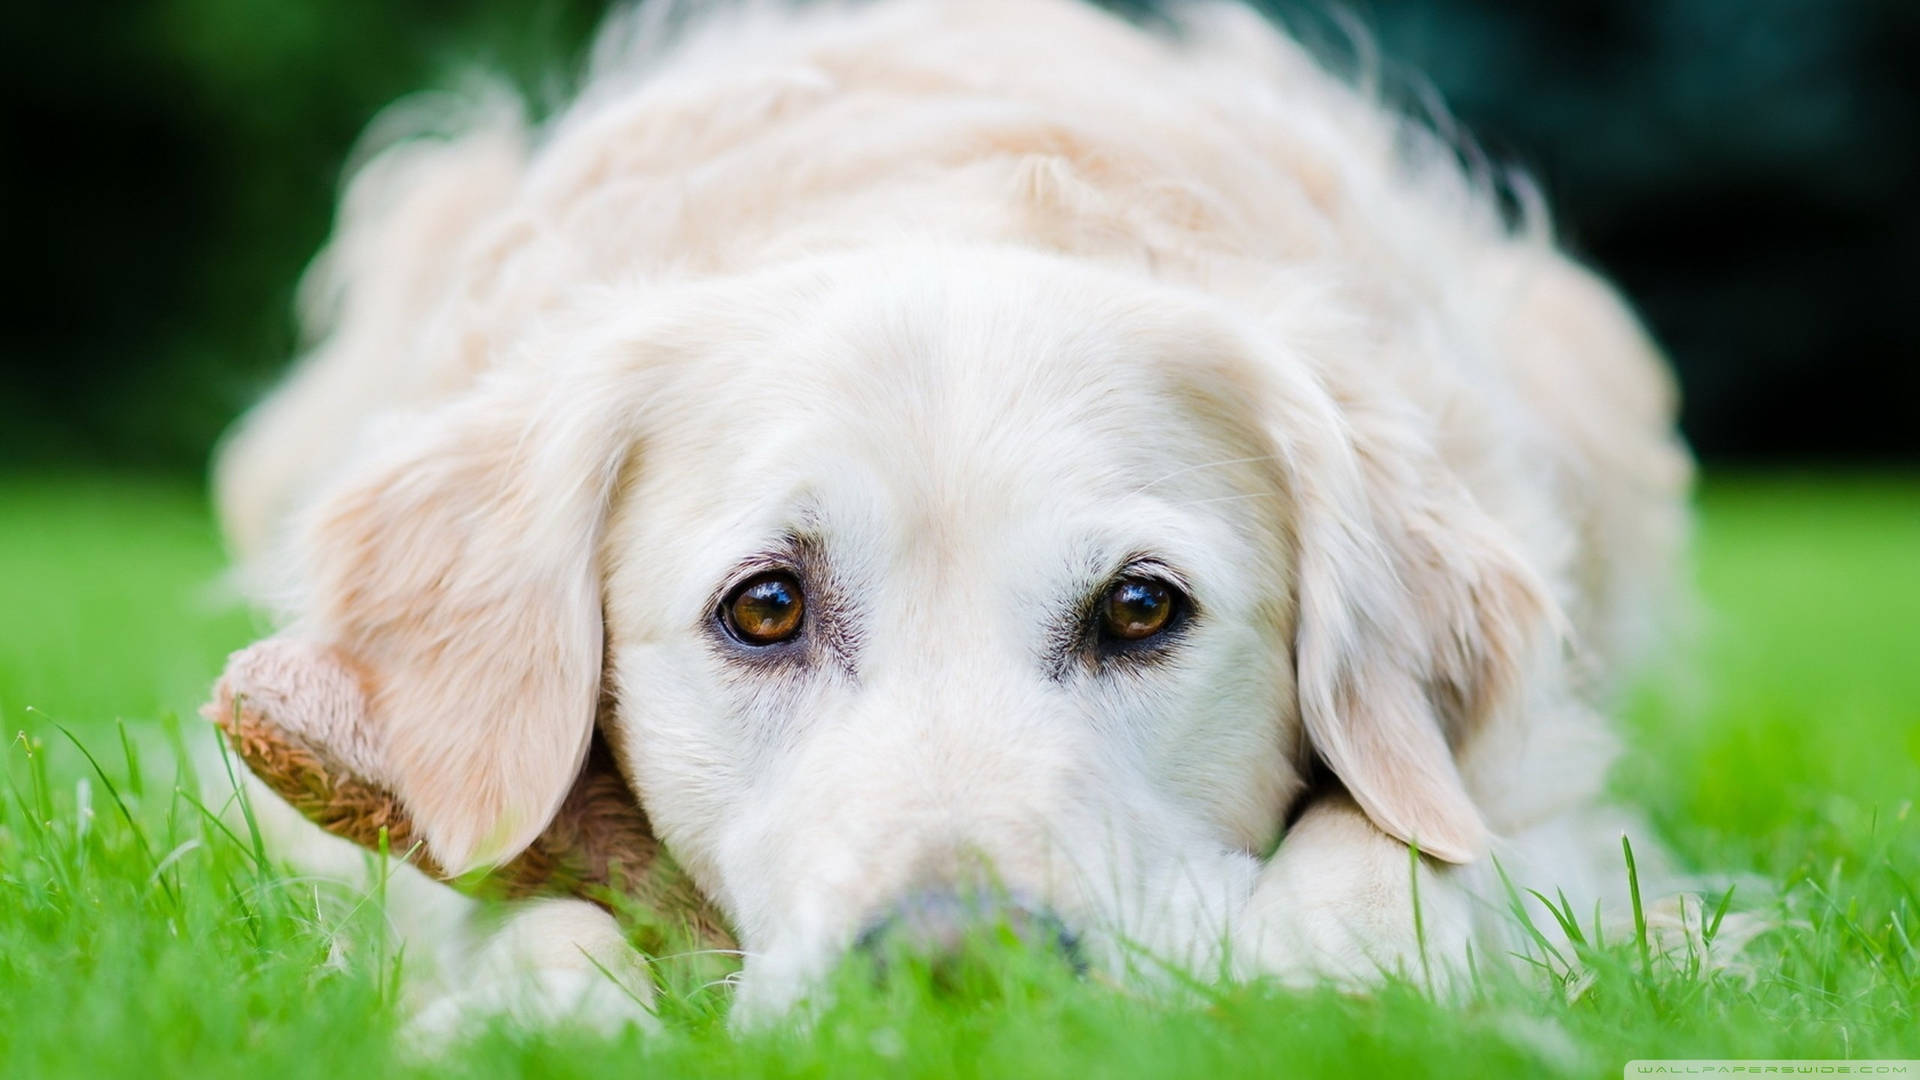 Cute White Kuvasz Dog Eyes Background